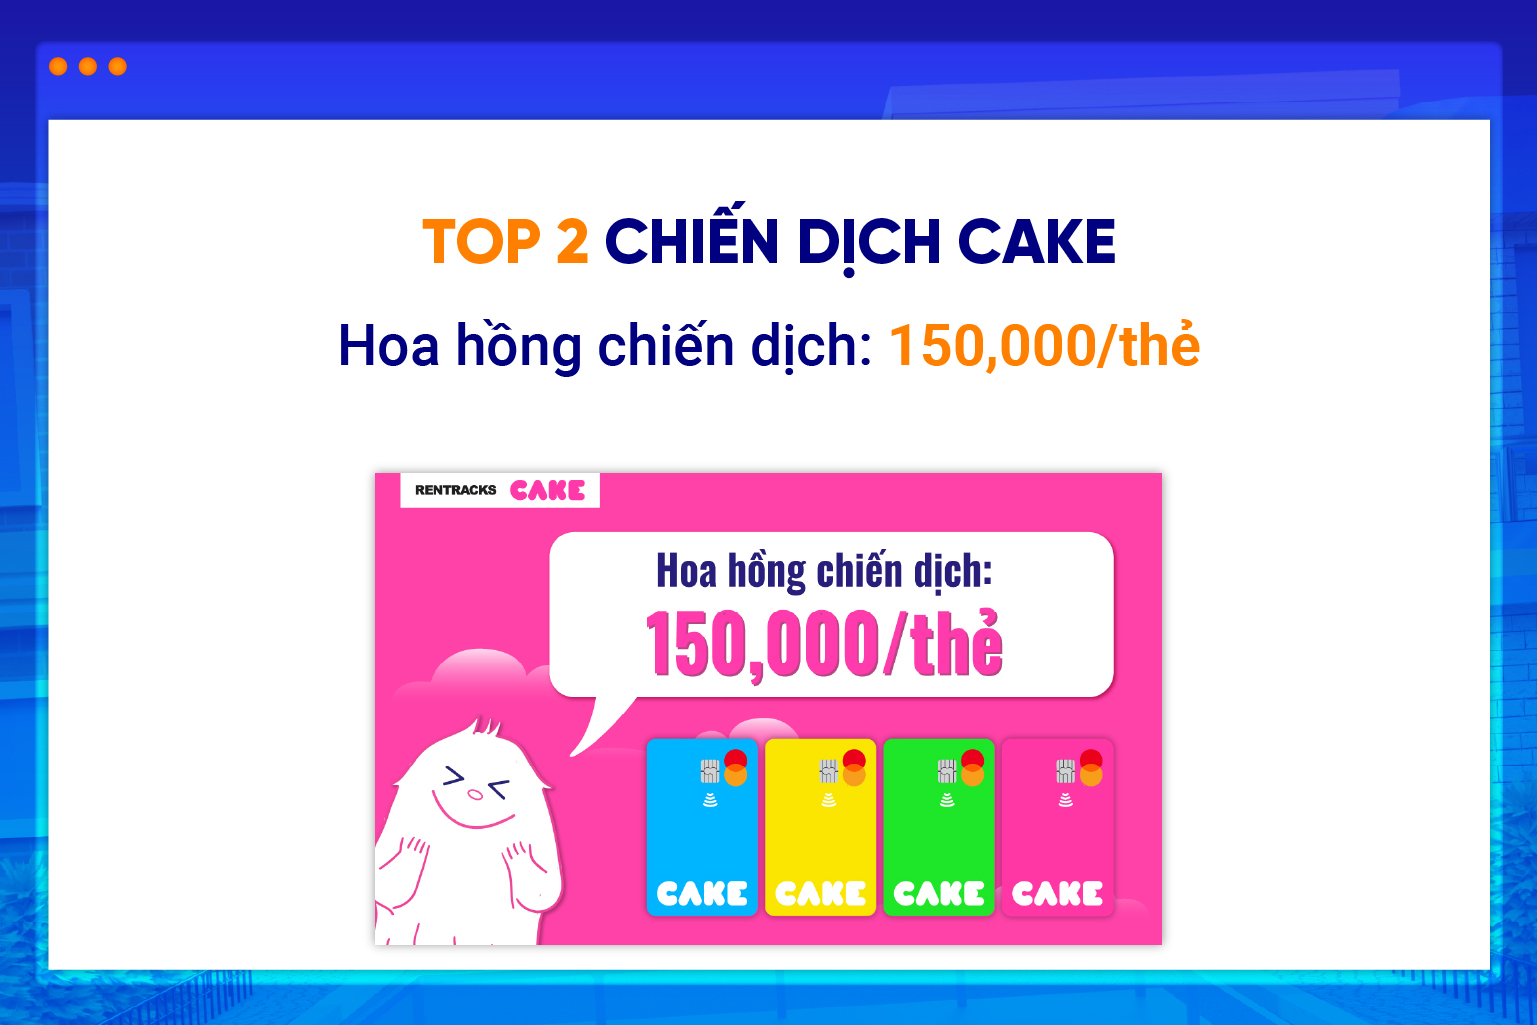 Chiến dịch Cake by VP Bank hứa hẹn là chiến dịch hốt số tháng 11